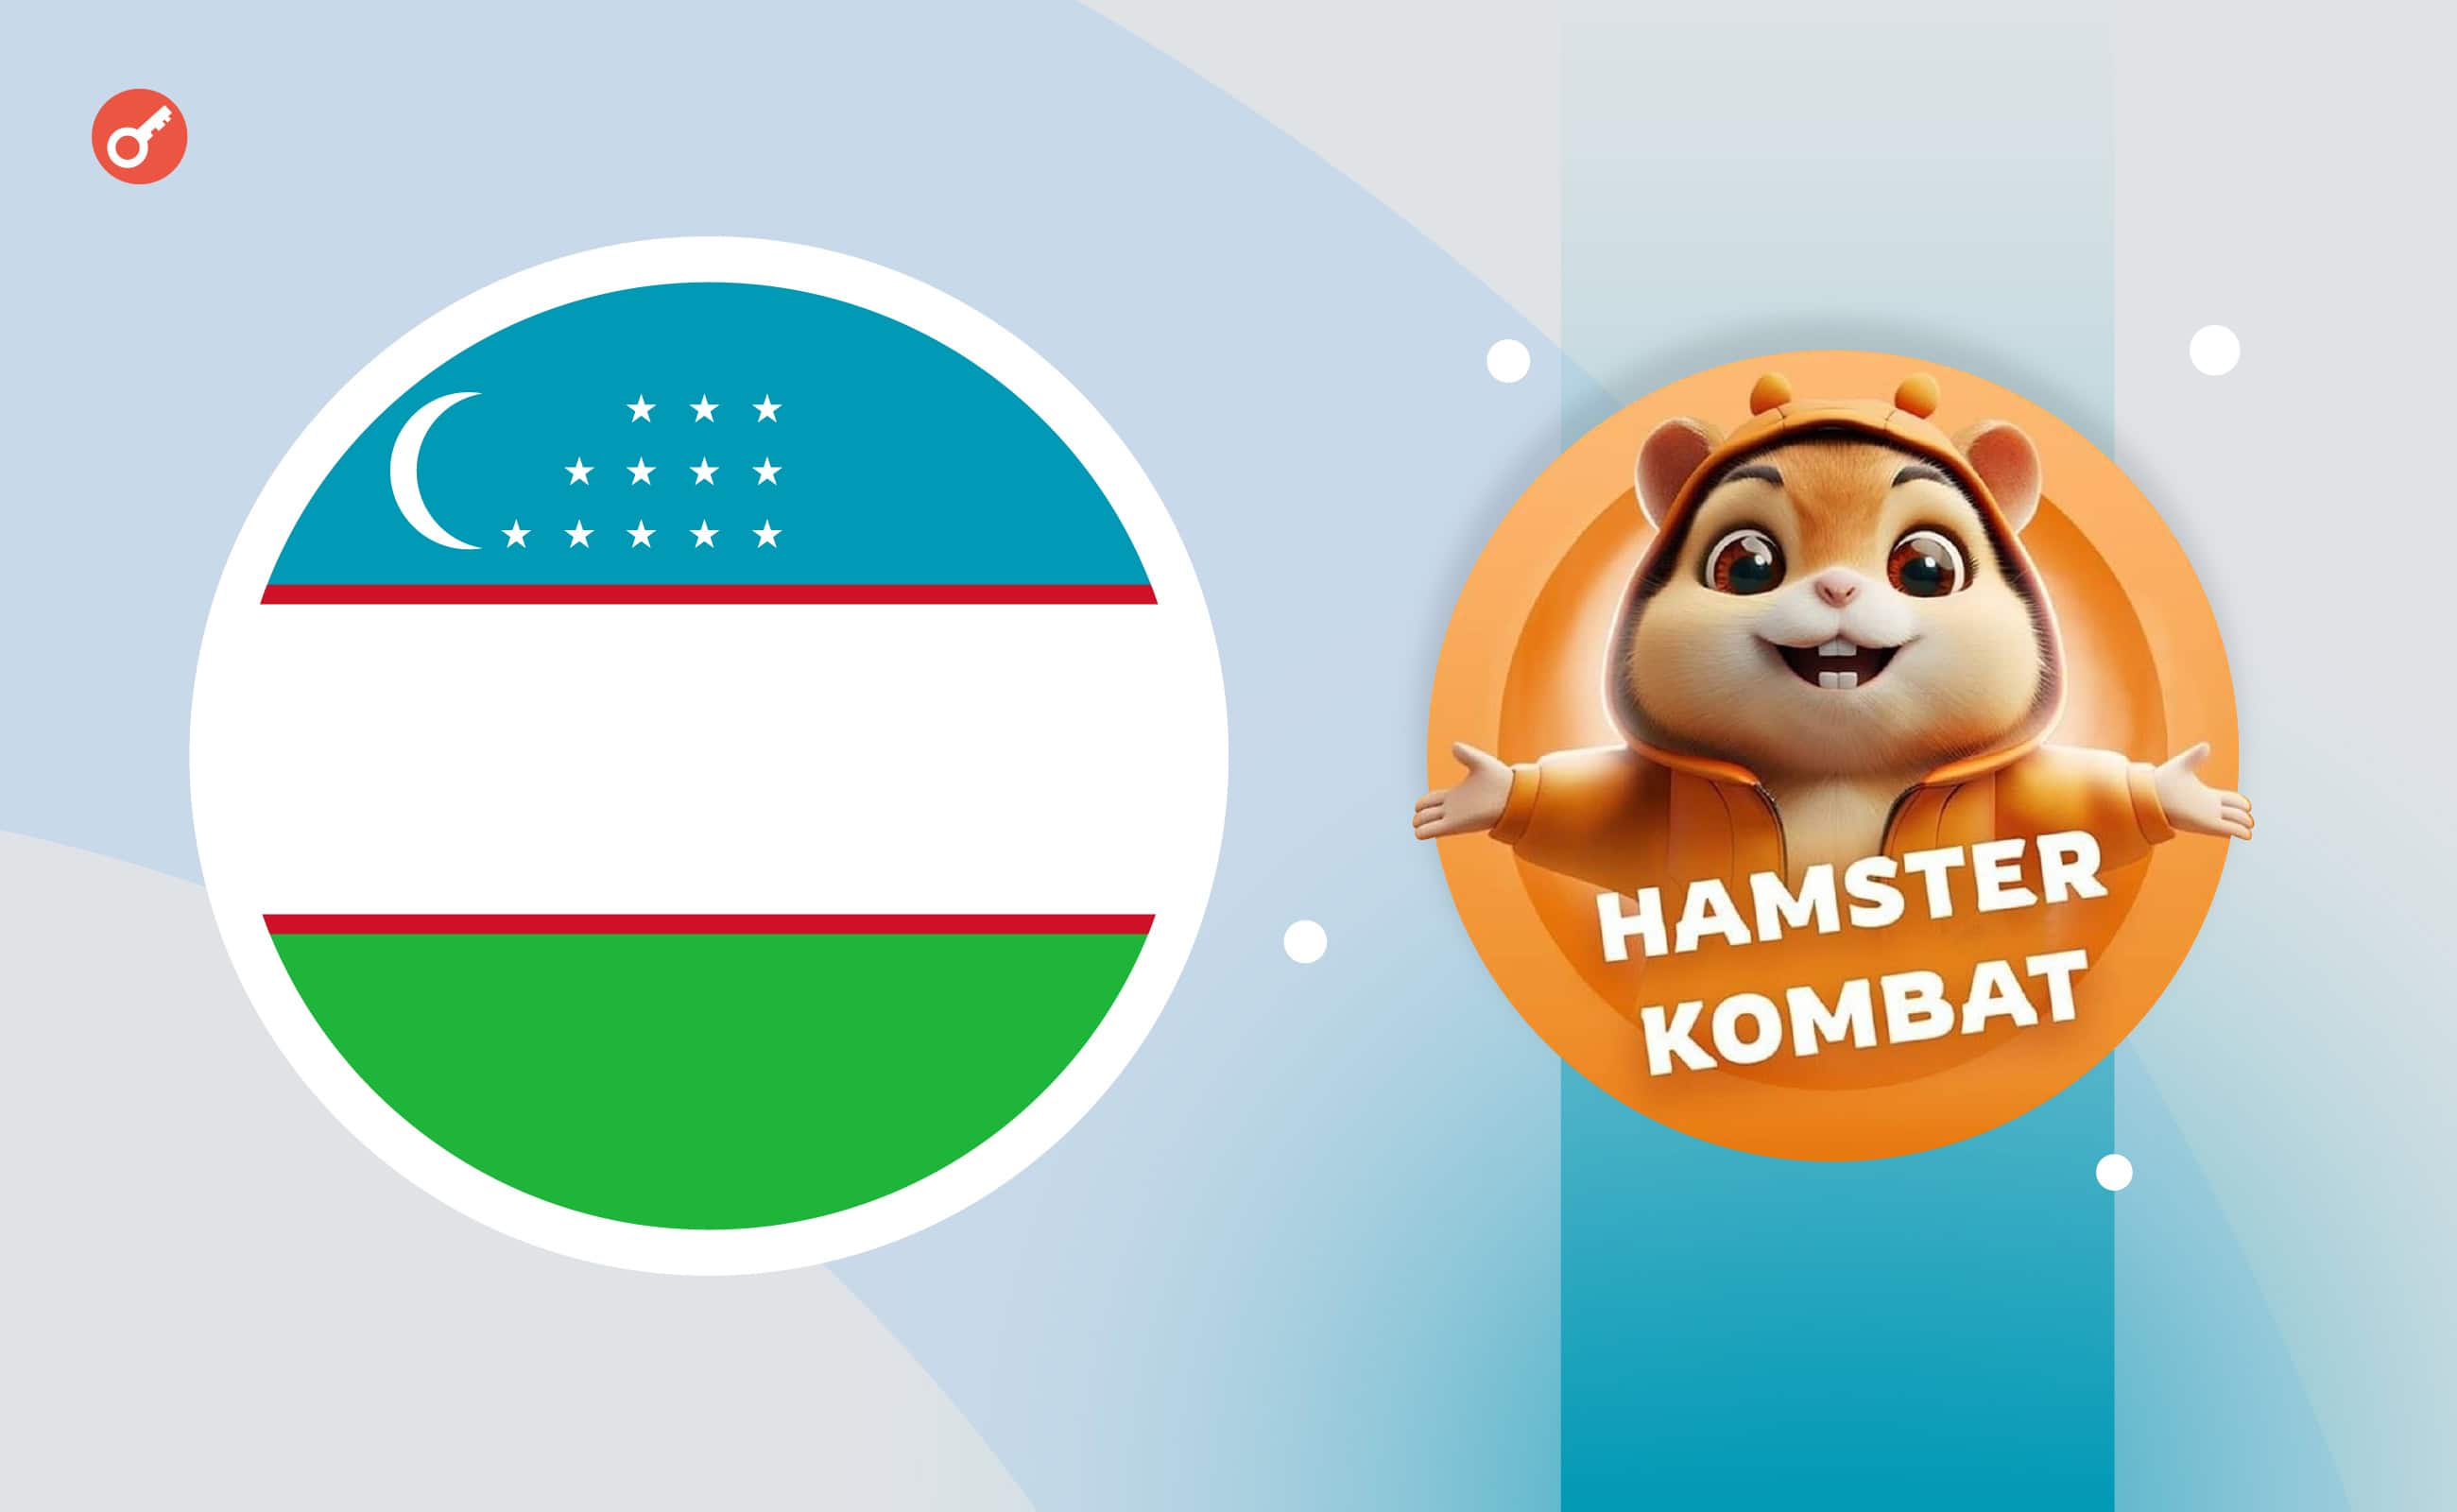 Регулятор Узбекистана опроверг информацию о запрете игры Hamster Kombat. Заглавный коллаж новости.